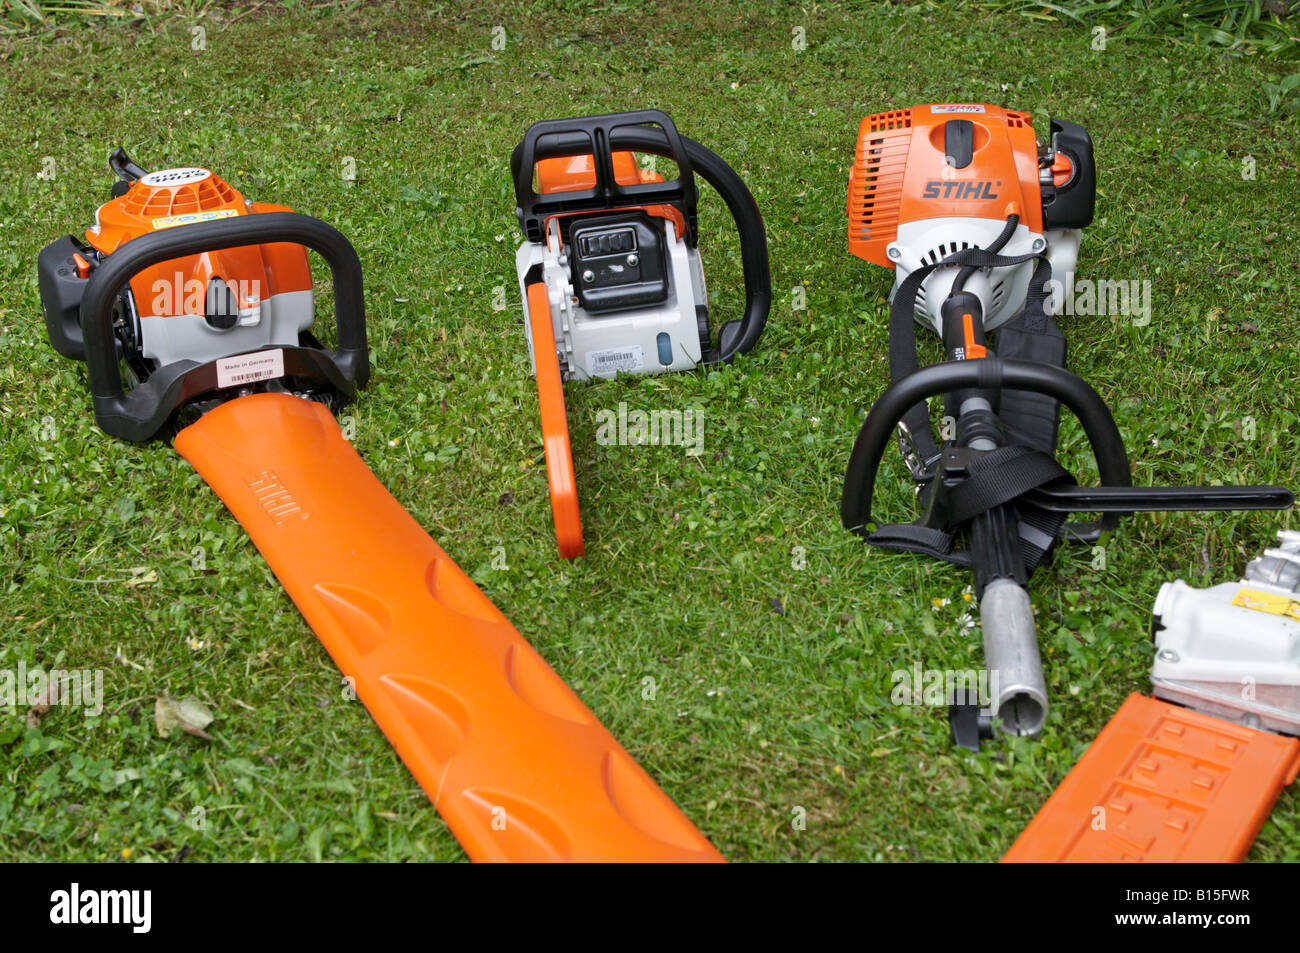 Les outils électriques Stihl alignés sur la pelouse avec gaines de protection sur les surfaces de coupe Stihl MS 180 KM MOTEUR Combi 90 Banque D'Images